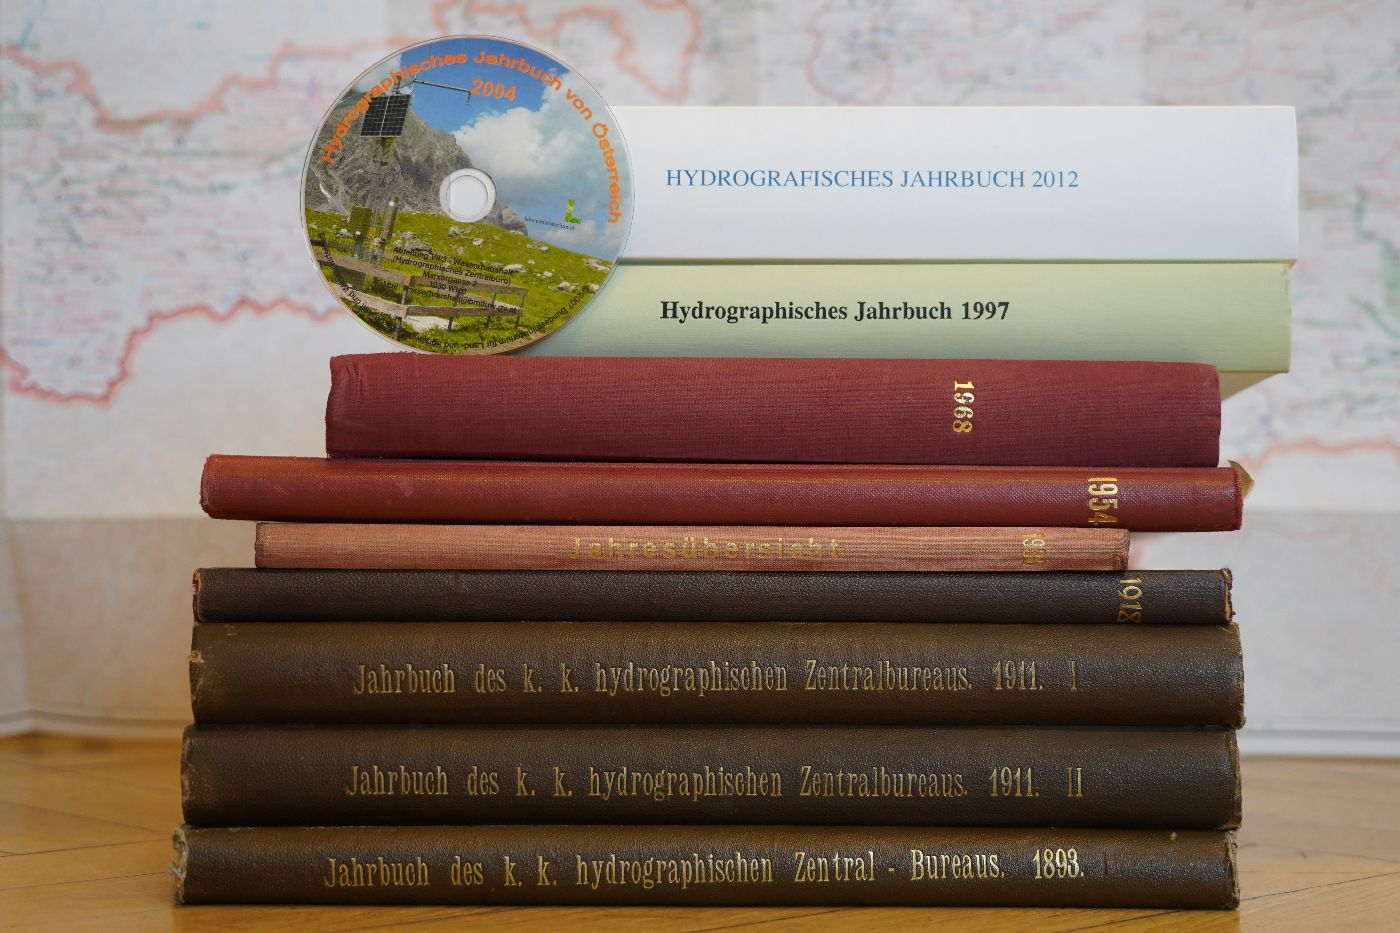 Abbildung der Hydrographischen Jahrbücher von alt bis neu